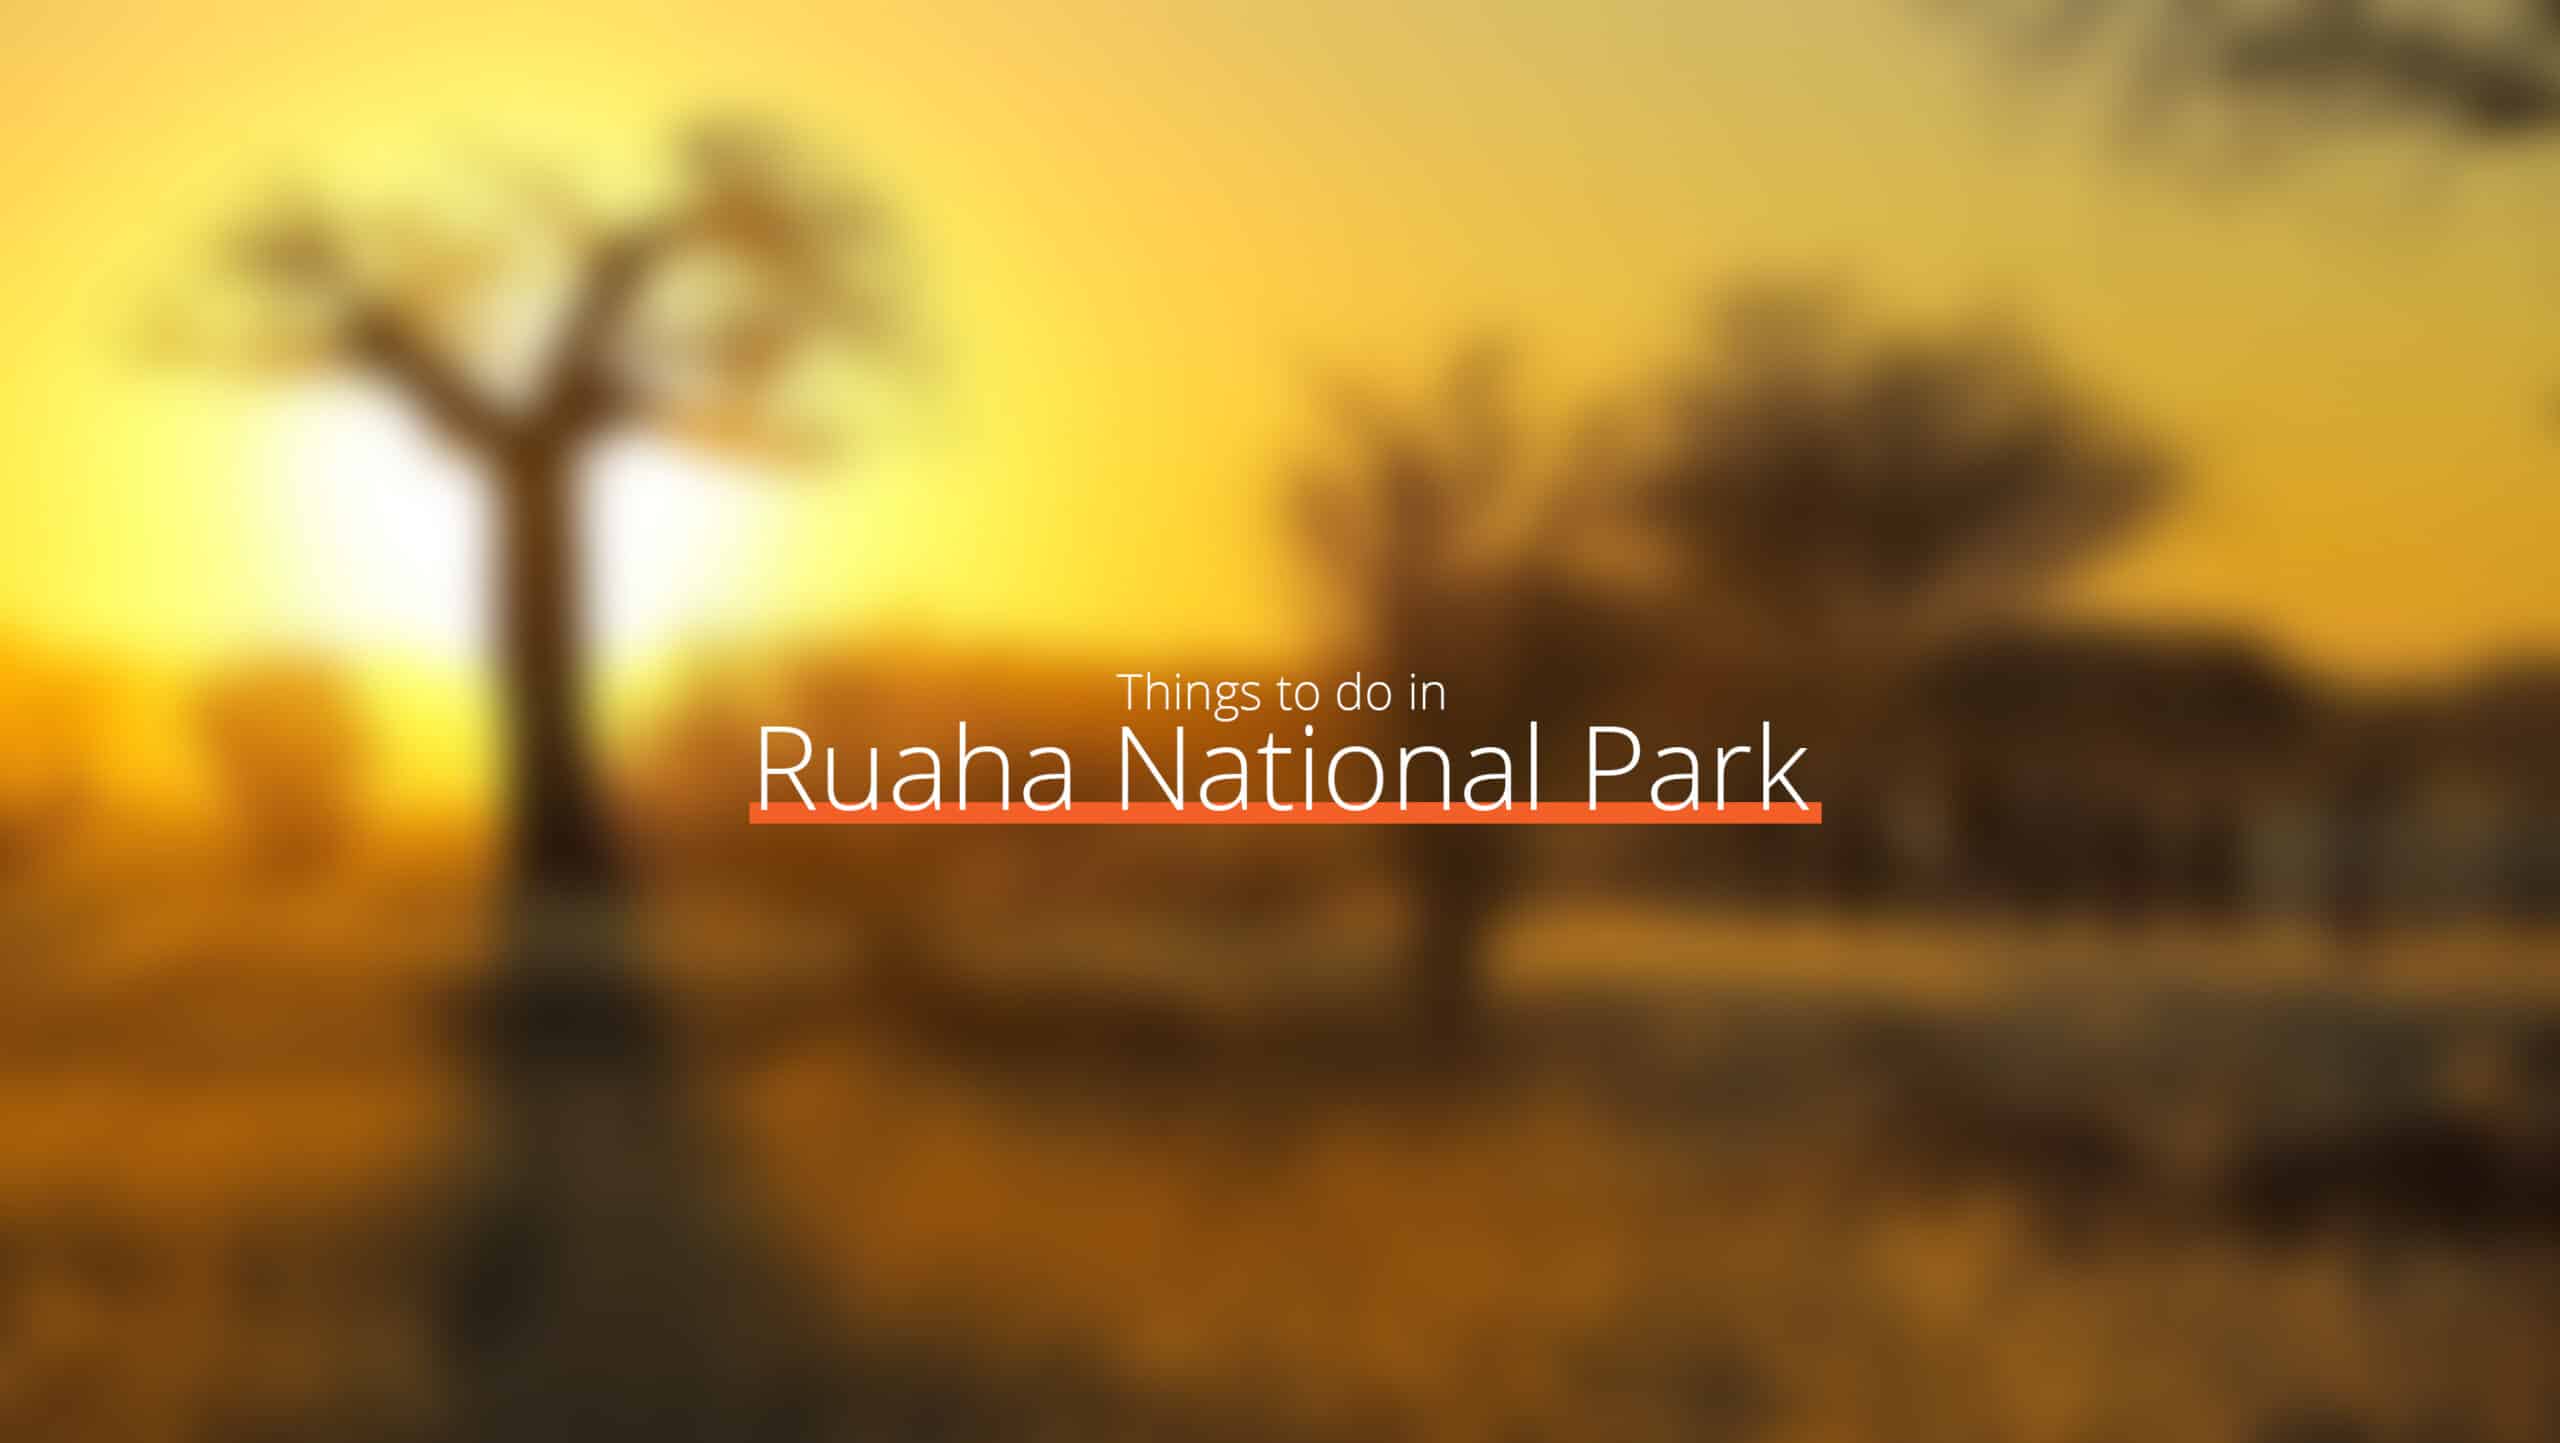 坦桑尼亚 - ruaha 国家公园缩放 - 去哪里